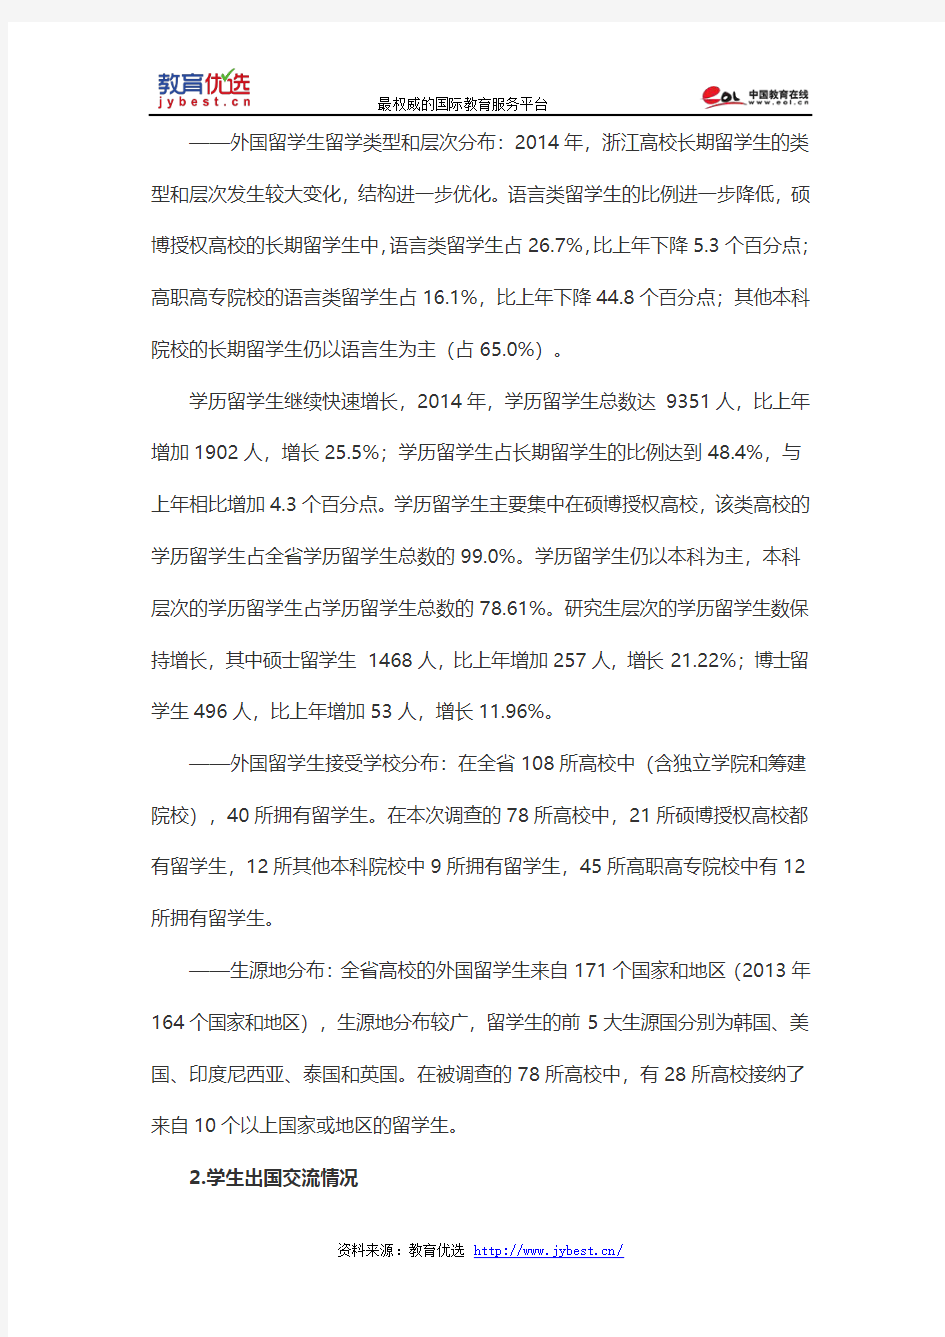 浙江省高等教育国际化年度报告(2014年)